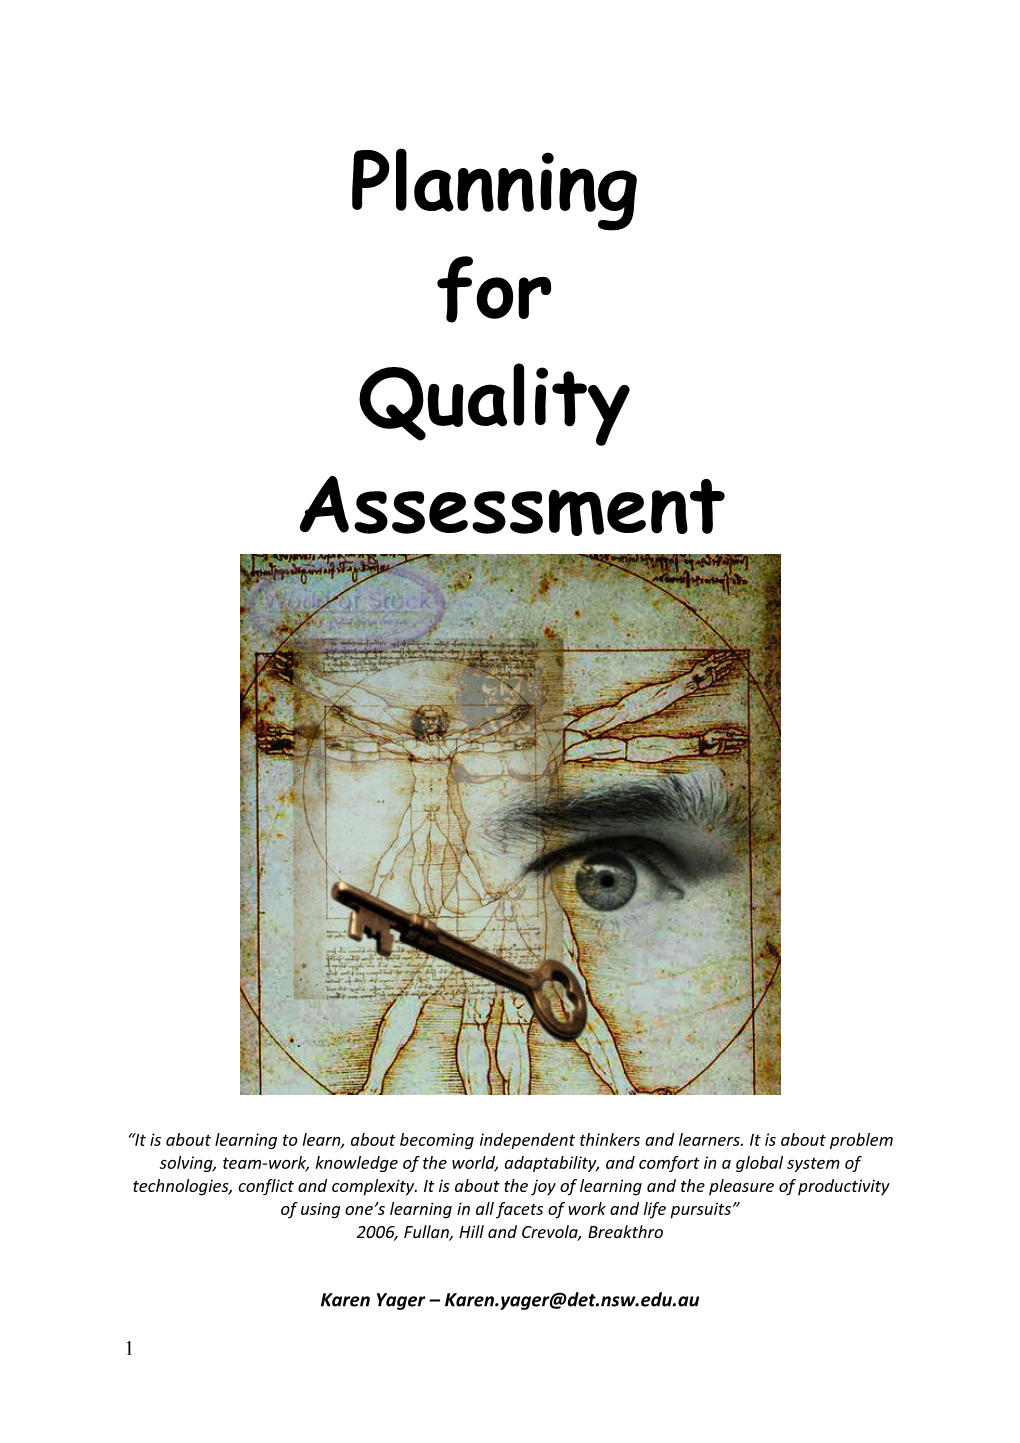 Designing for Deep Understanding Through Assessment